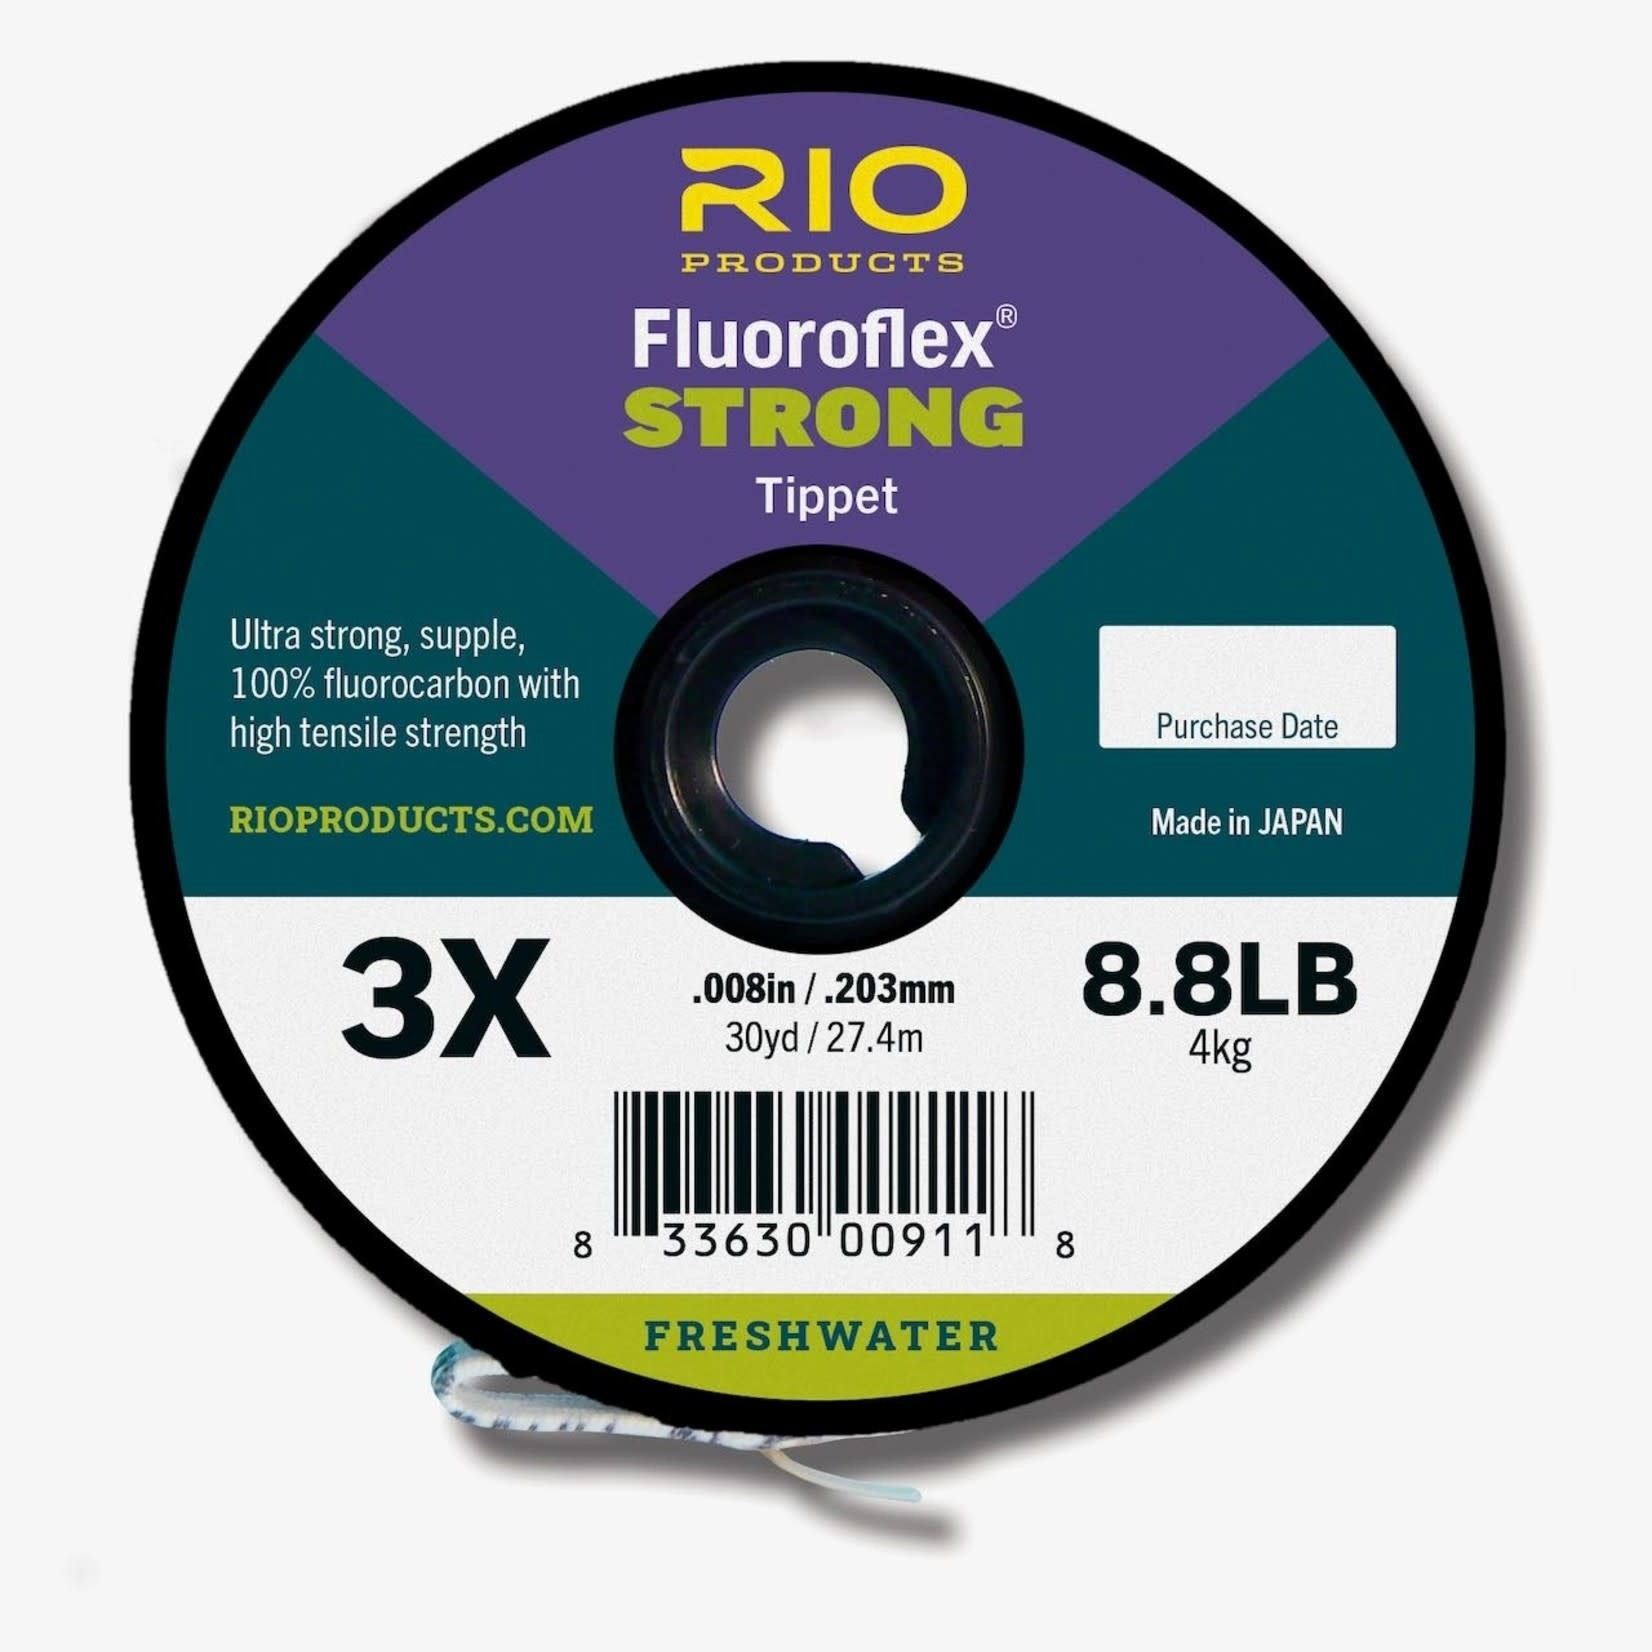 RIO Rio FLUOROFLEX STRONG TIPPET 30yds